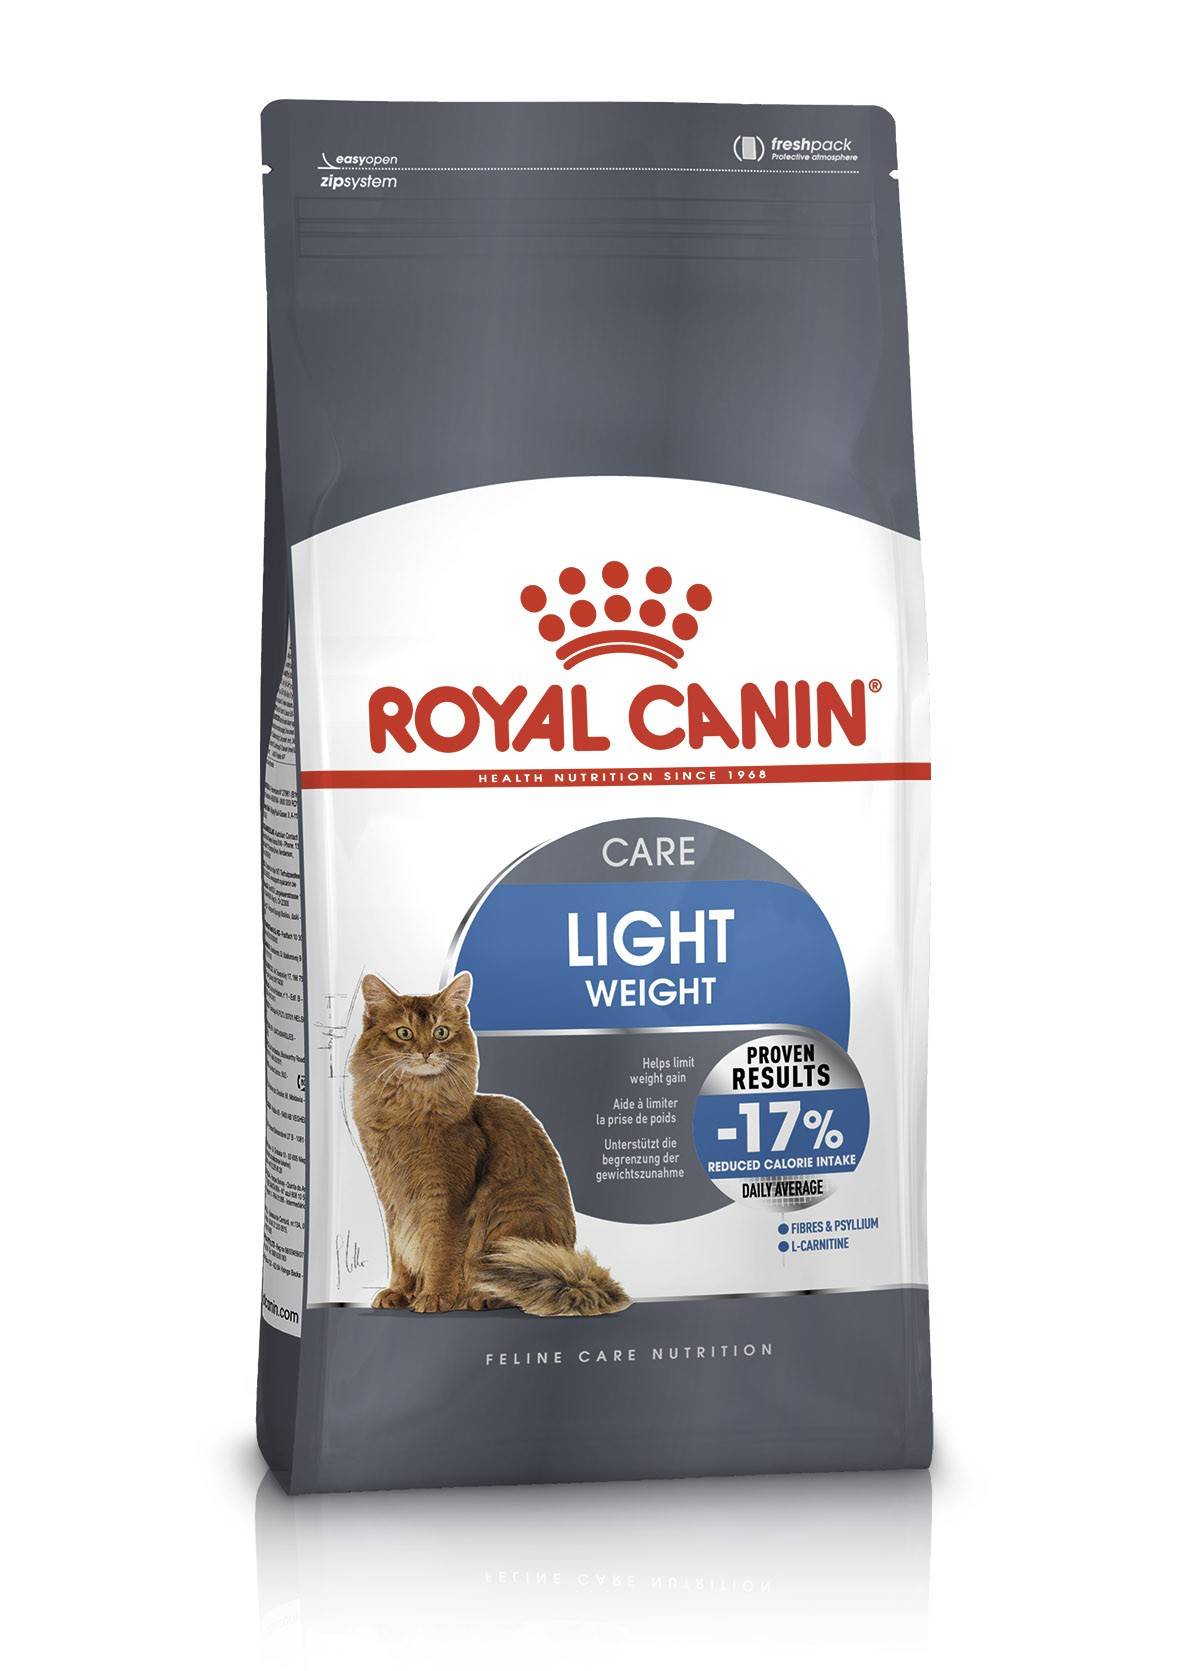 ROYAL CANIN LIGHT WEIGHT CARЕ – сухой корм для взрослых котов для ограничения спонтанного набора веса